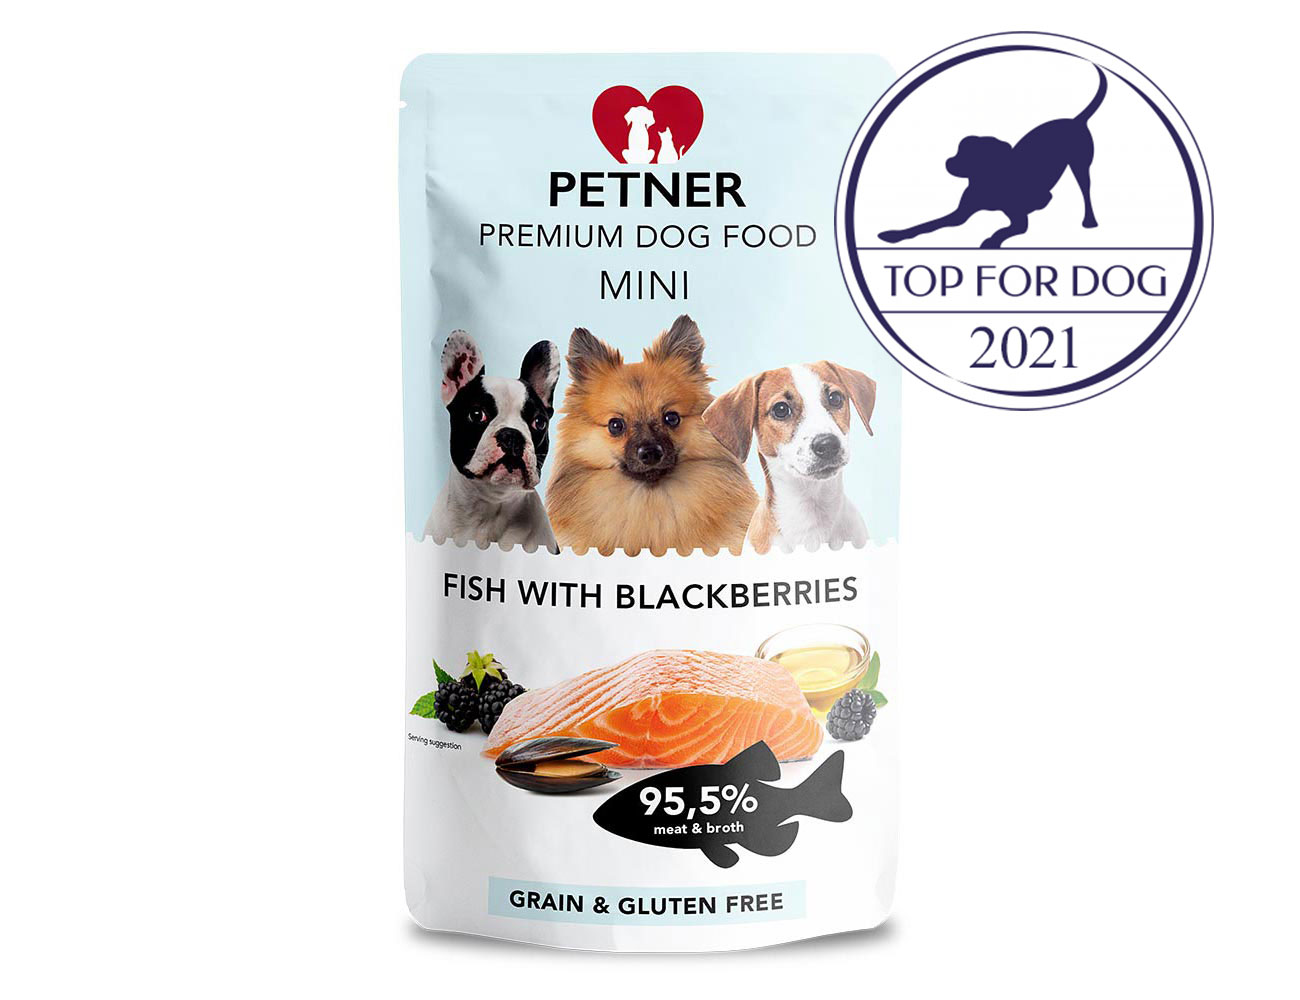 PETNER MINI konzerva pre psov ryba s černicami 135g 95,5% mäsa a vývaru - prémiové krmivo pre psov